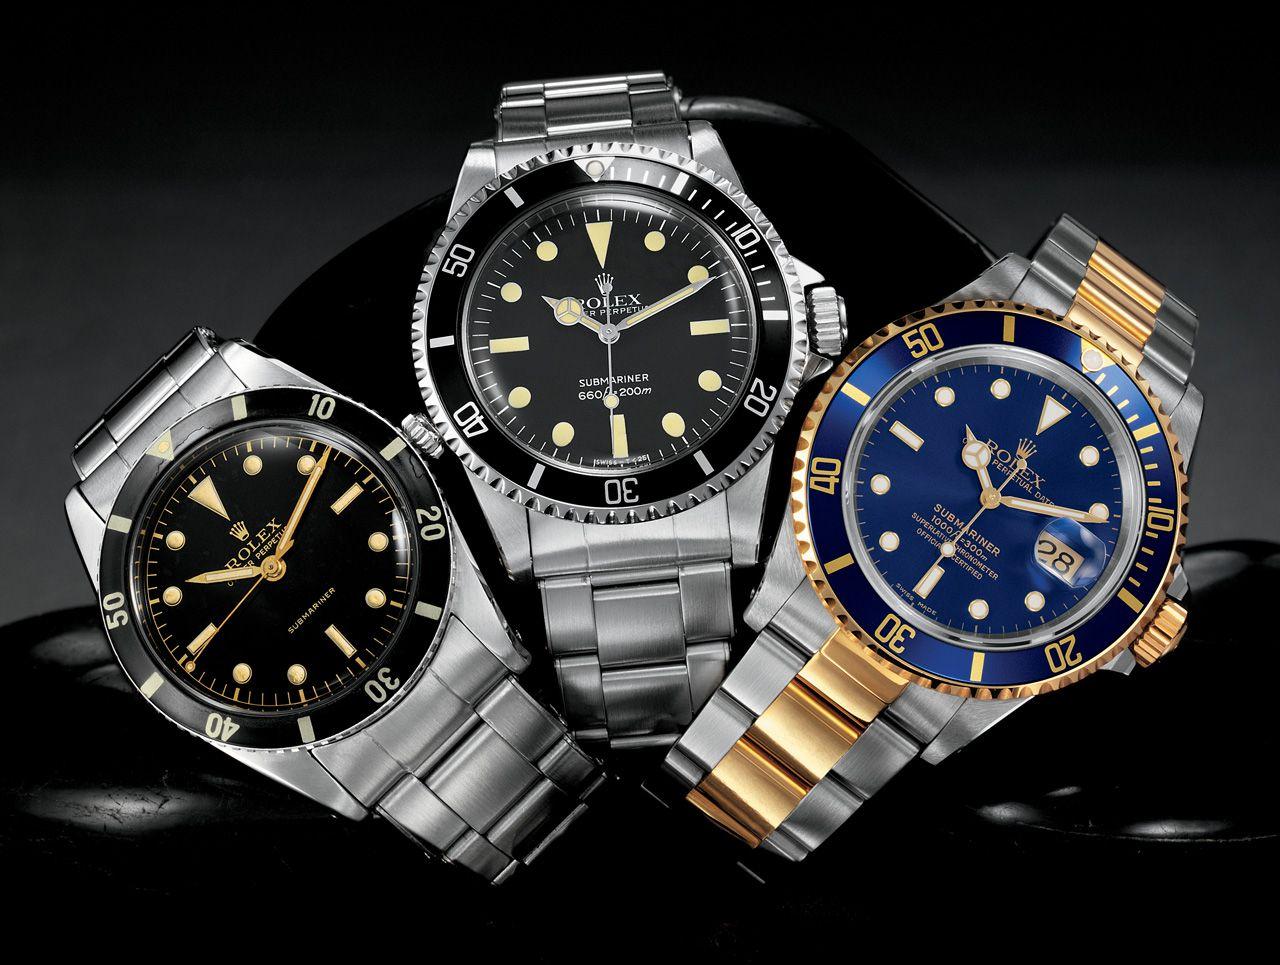 classic rolex. Watches. Rolex watches, Rolex